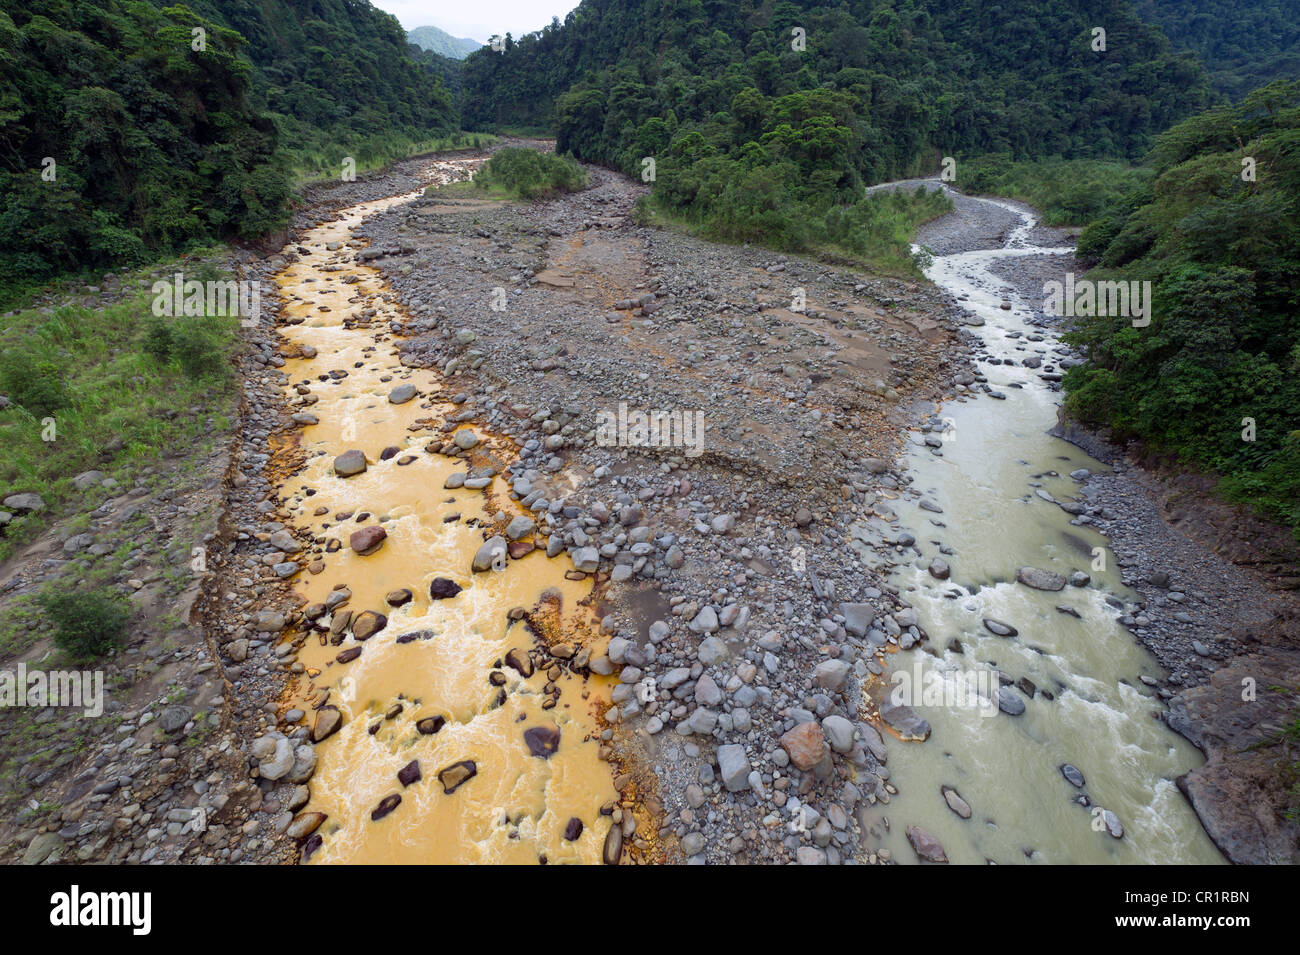 Rio Sucio, "Dirty River", Braulio Carrillo National Park, Costa Rica, Central America Stock Photo